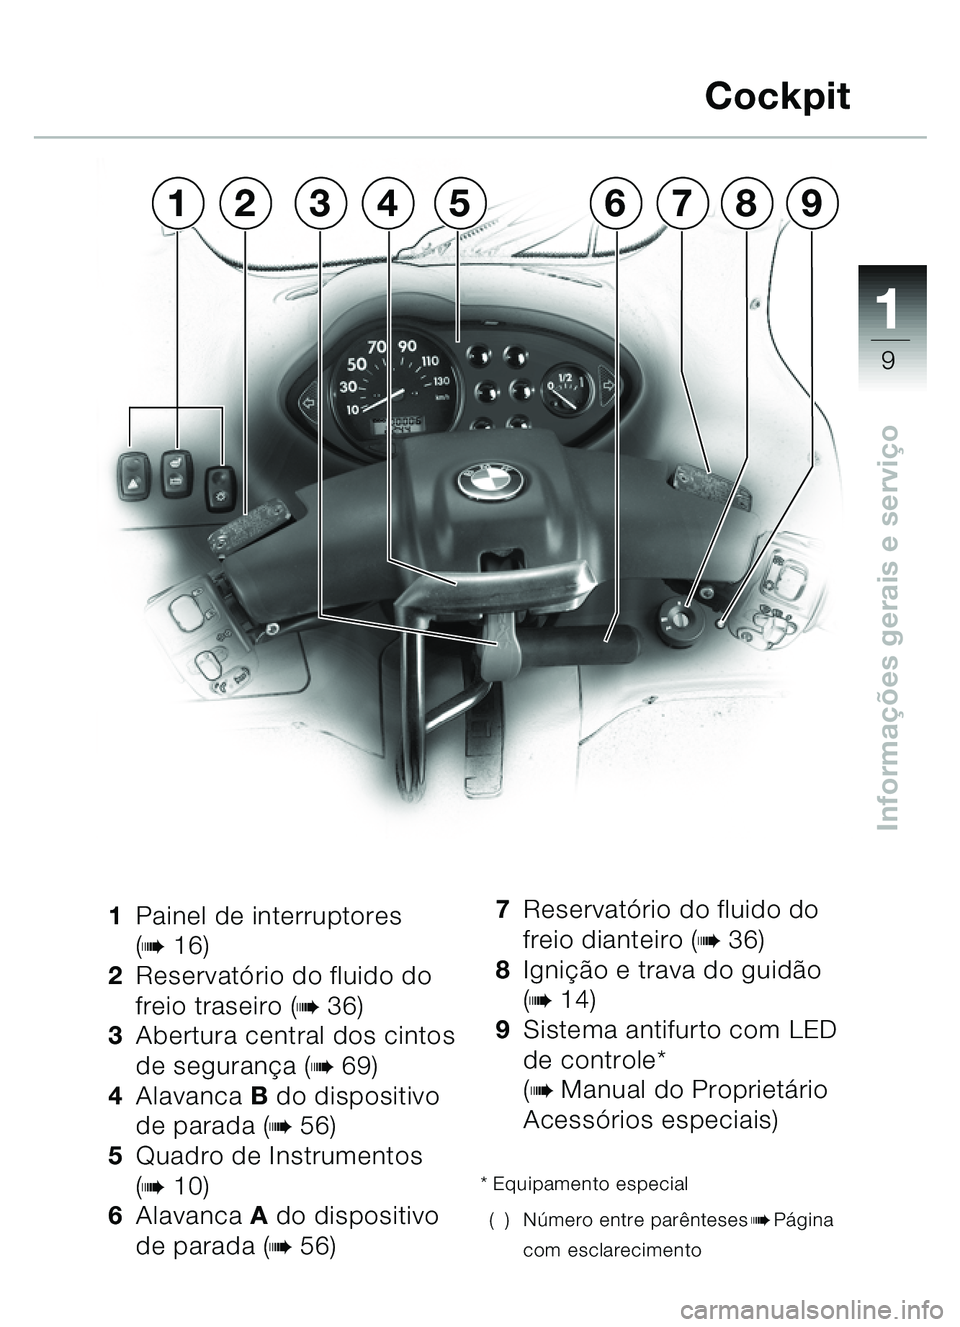 BMW MOTORRAD C1 2000  Manual do condutor (in Portuguese) 111
9
Informações gerais e servi ço
1 Painel de interruptores 
(b16)
2 Reservat ório do fluido do 
freio traseiro (
b36)
3 Abertura central dos cintos 
de seguran ça (
b69)
4 Alavanca  B do dispo